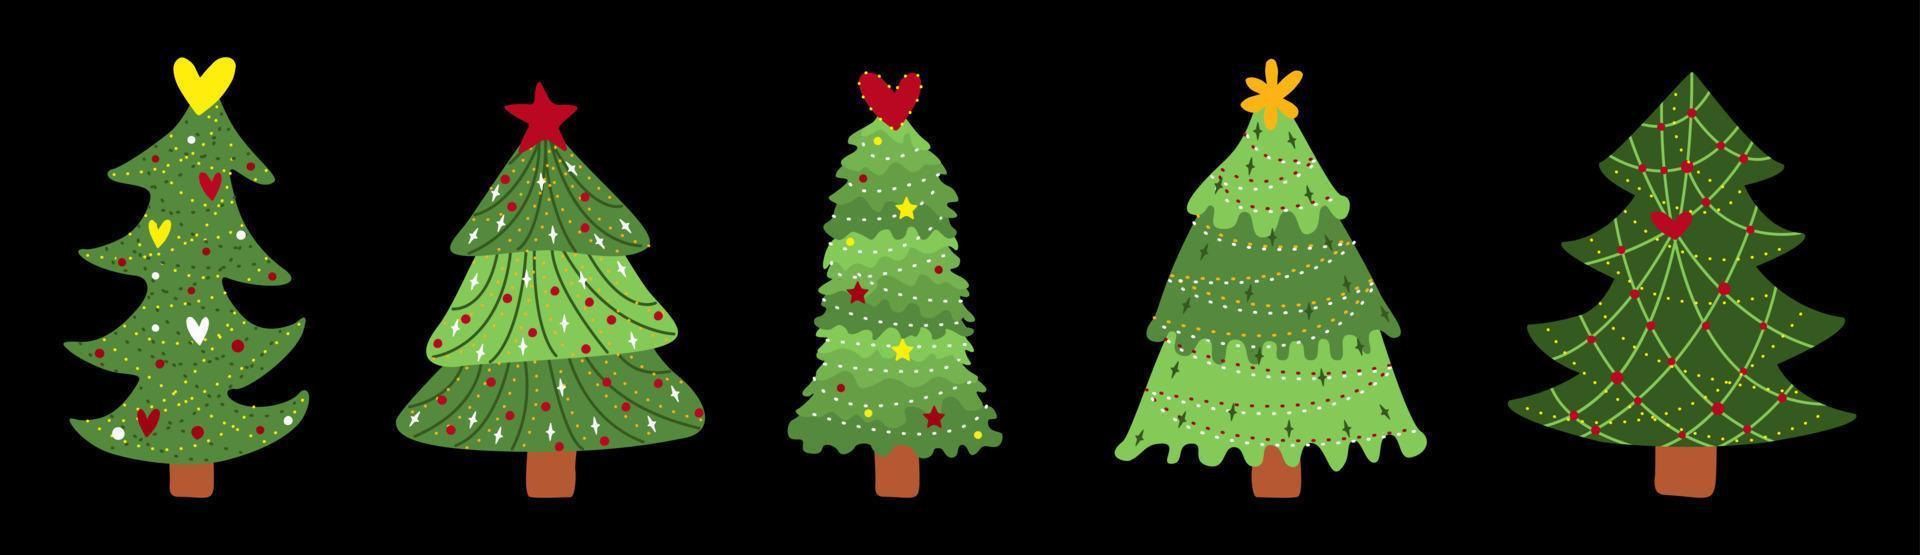 Weihnachtsbaum. Symbol des neuen Jahres. Reihe von Pinien mit Dekor, Girlanden, Lichtern und Sternen. Vektor-Illustration isoliert. vektor